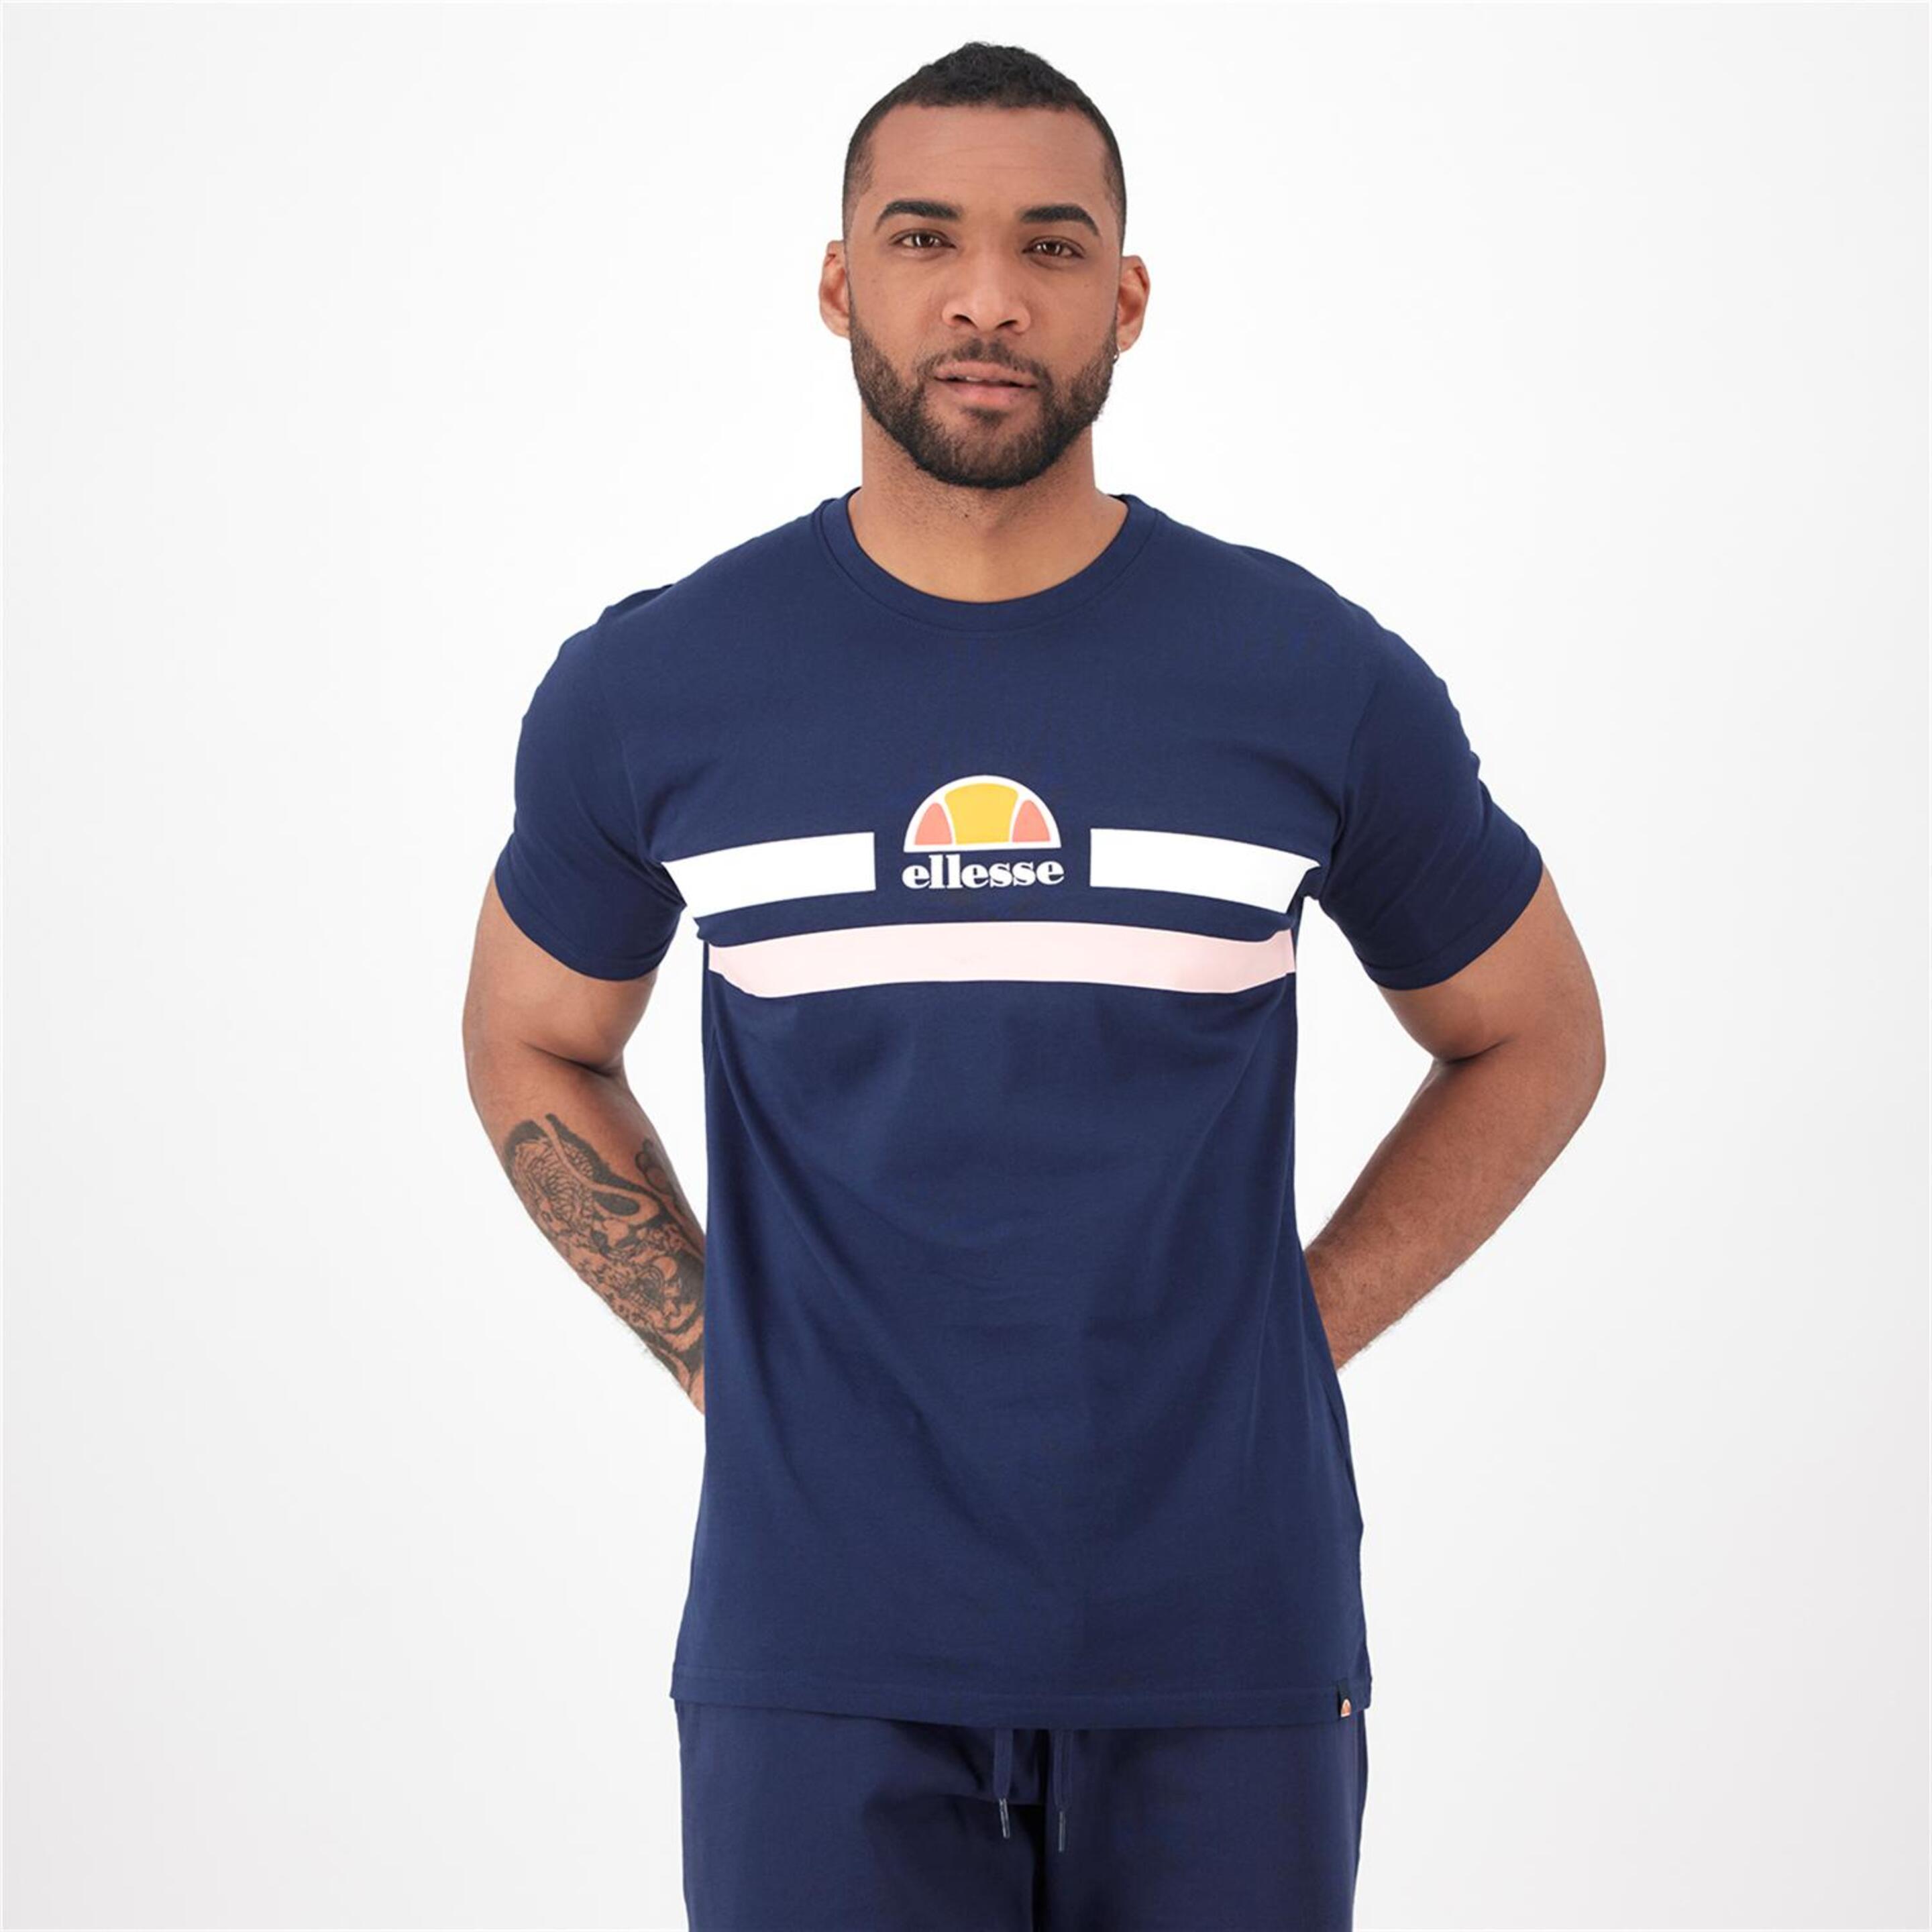 Ellesse Aprel - Marino - Camiseta Hombre